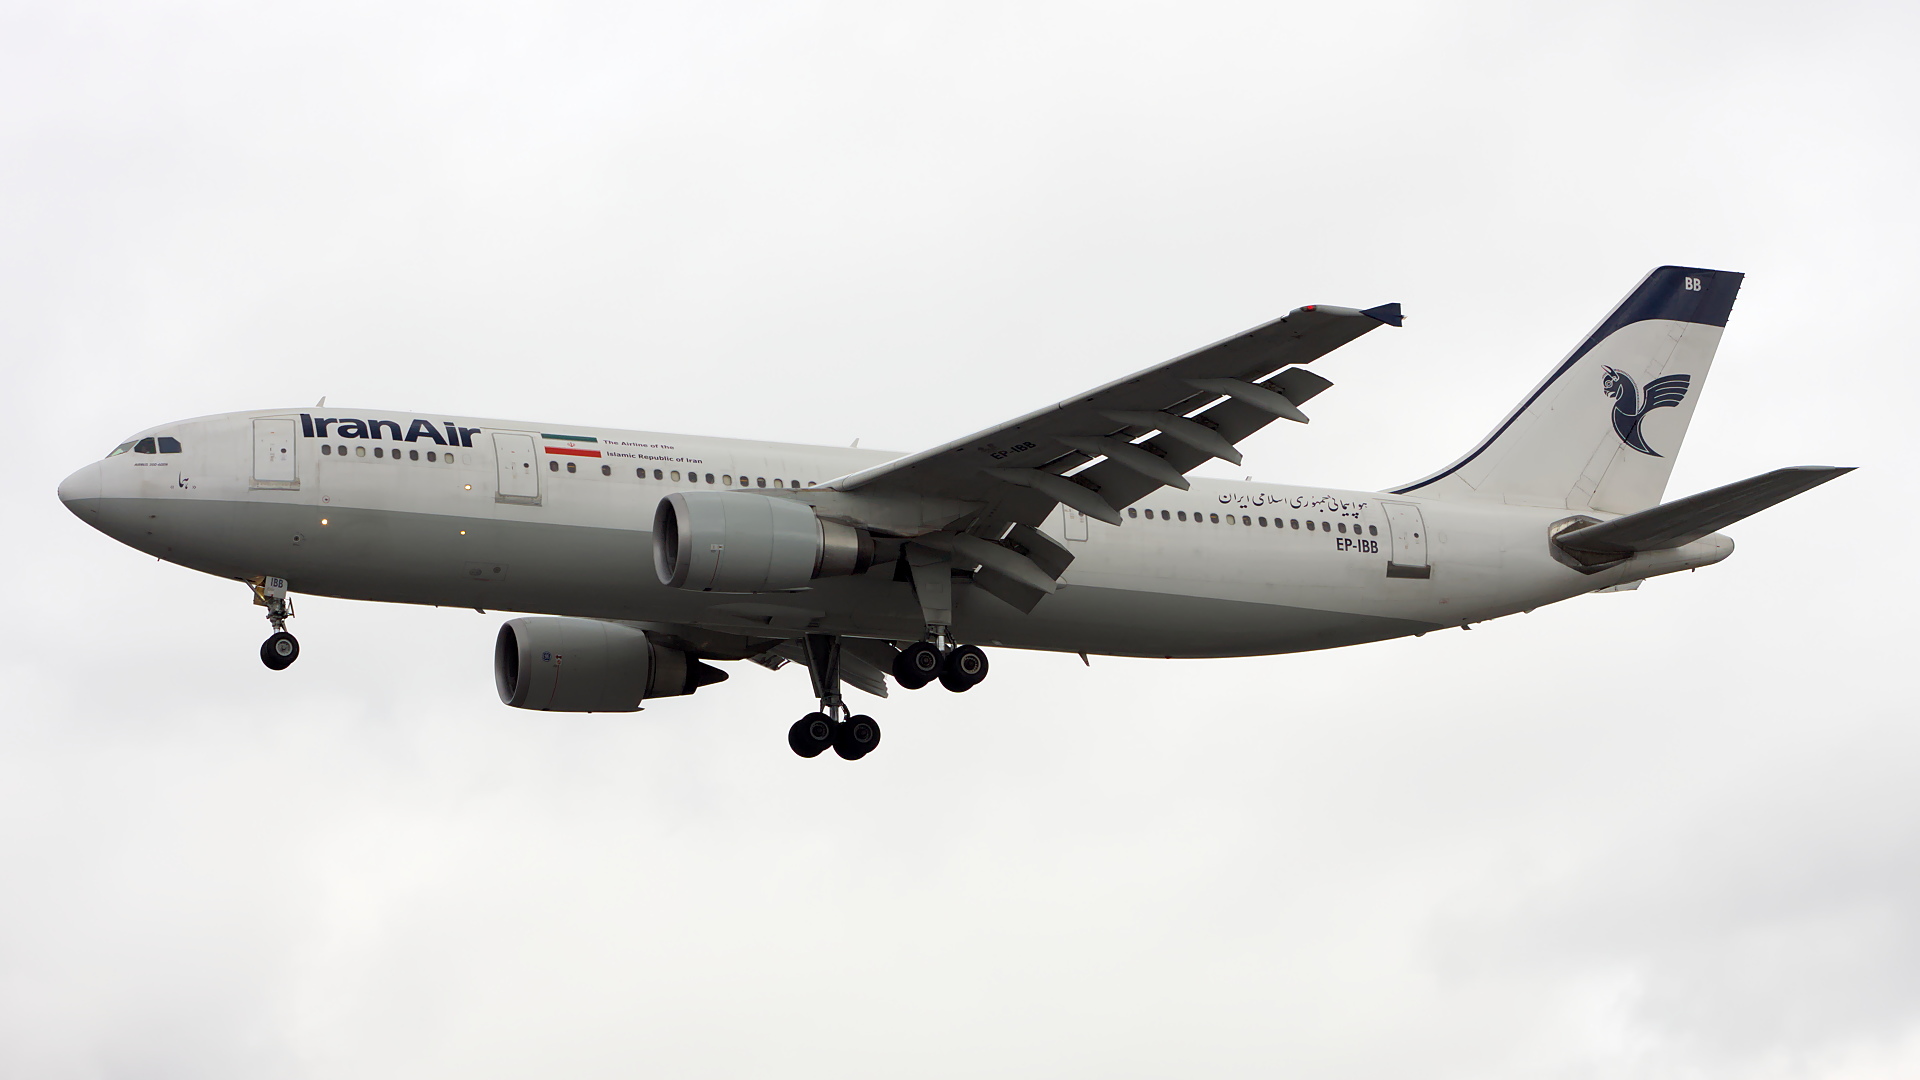 EP-IBB ✈ Iran Air Airbus A300B4-605R @ London-Heathrow